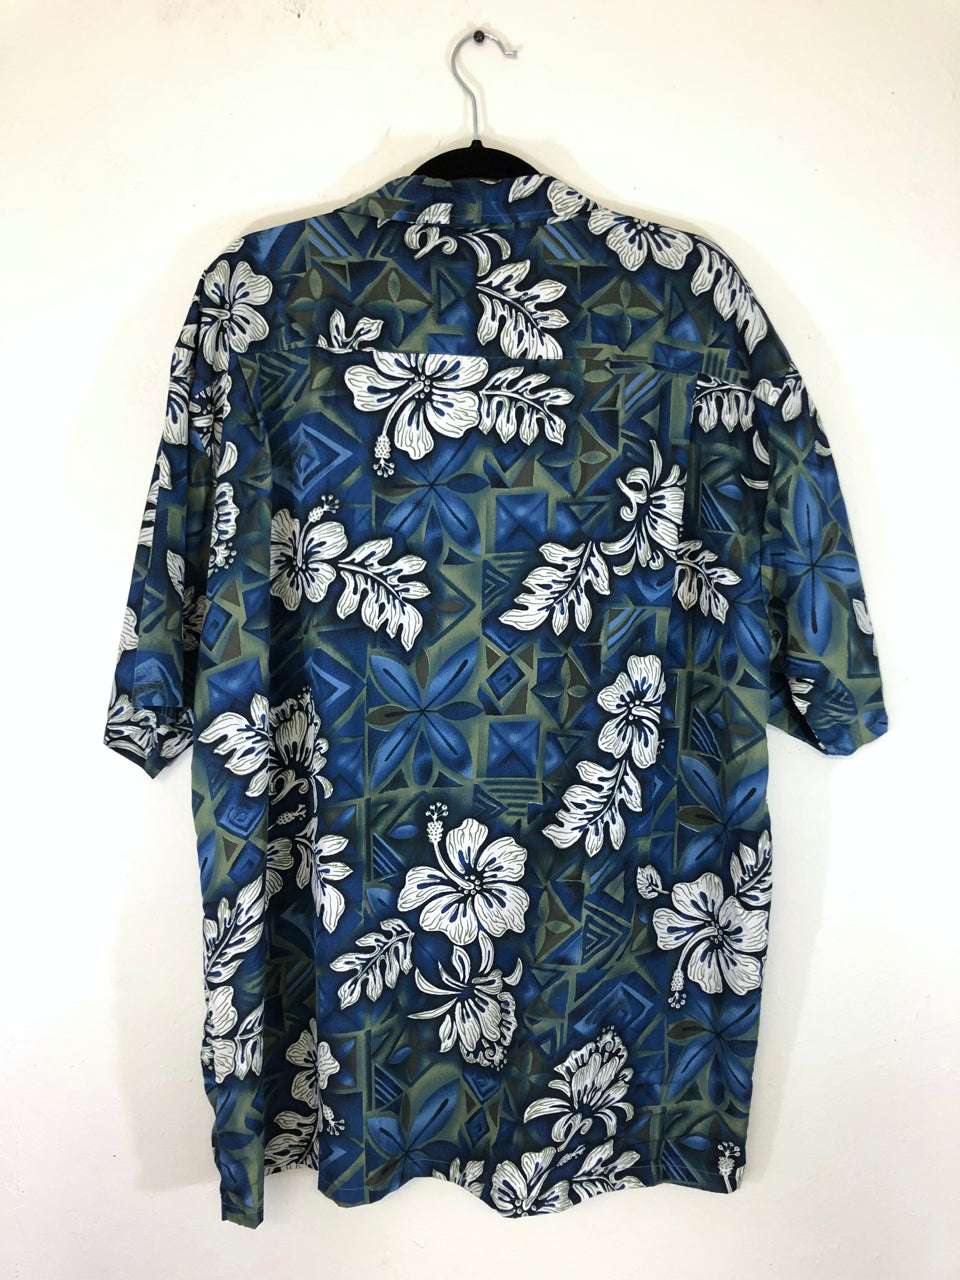 Maui Trading Company Hawaiian Shirt